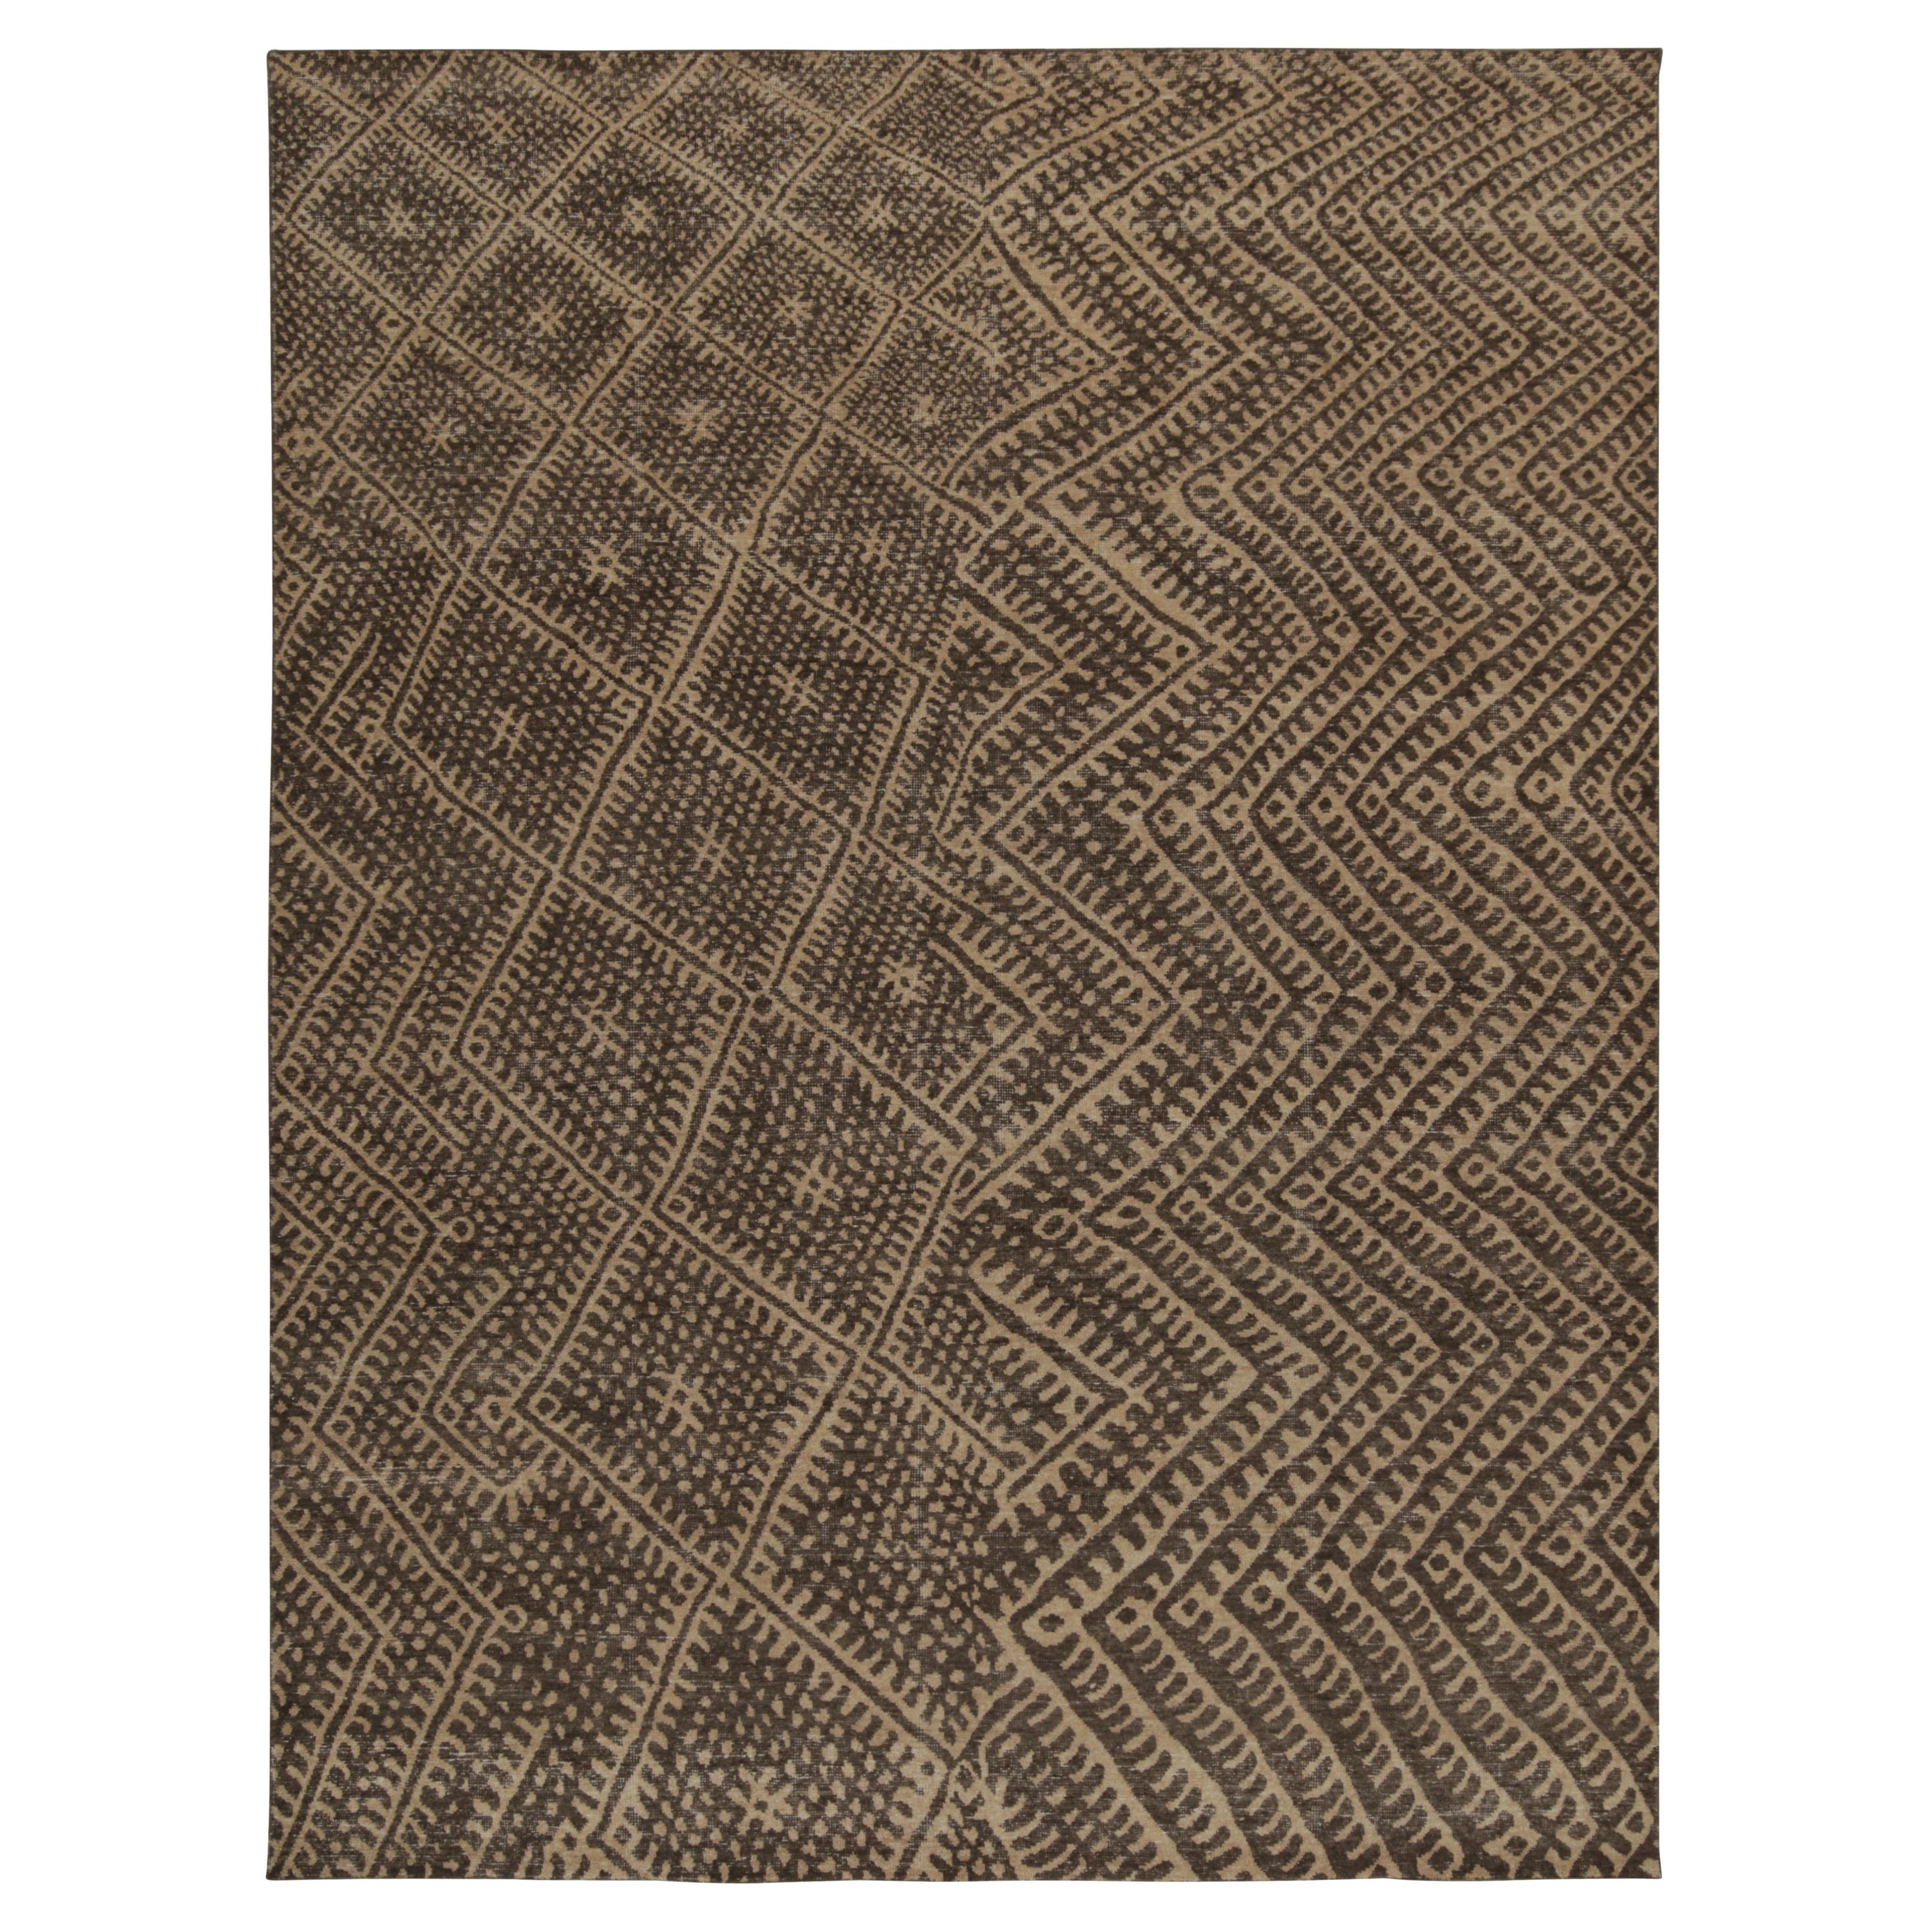 Rug & Kilim's Distressed Moroccan Style Rug en beige et brun motif géométrique